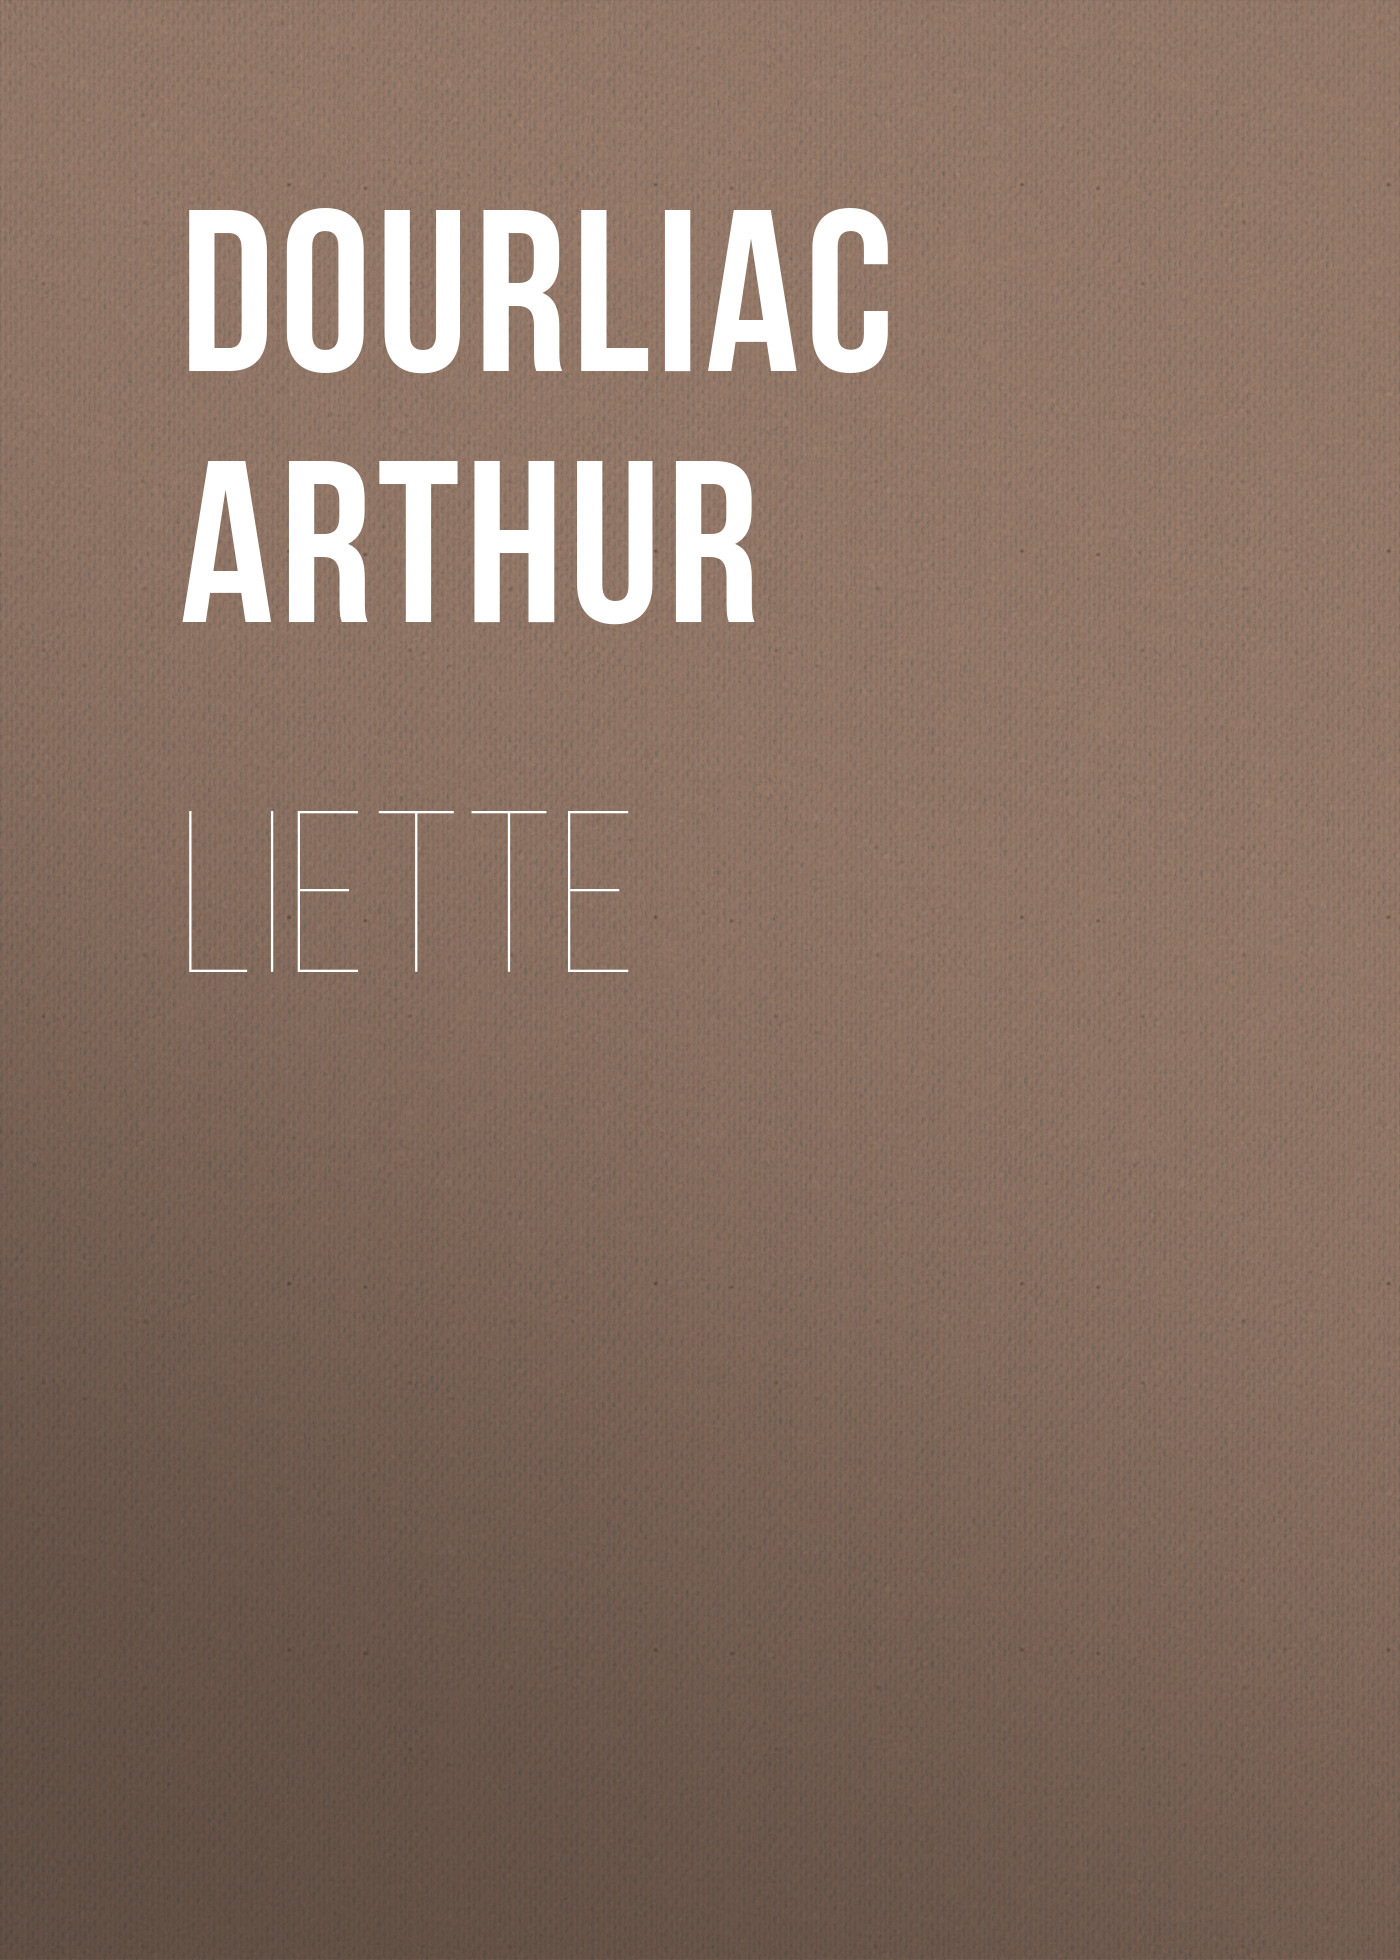 Книга Liette из серии , созданная Arthur Dourliac, может относится к жанру Зарубежная старинная литература, Зарубежная классика, Зарубежная фантастика. Стоимость электронной книги Liette с идентификатором 24621221 составляет 0 руб.